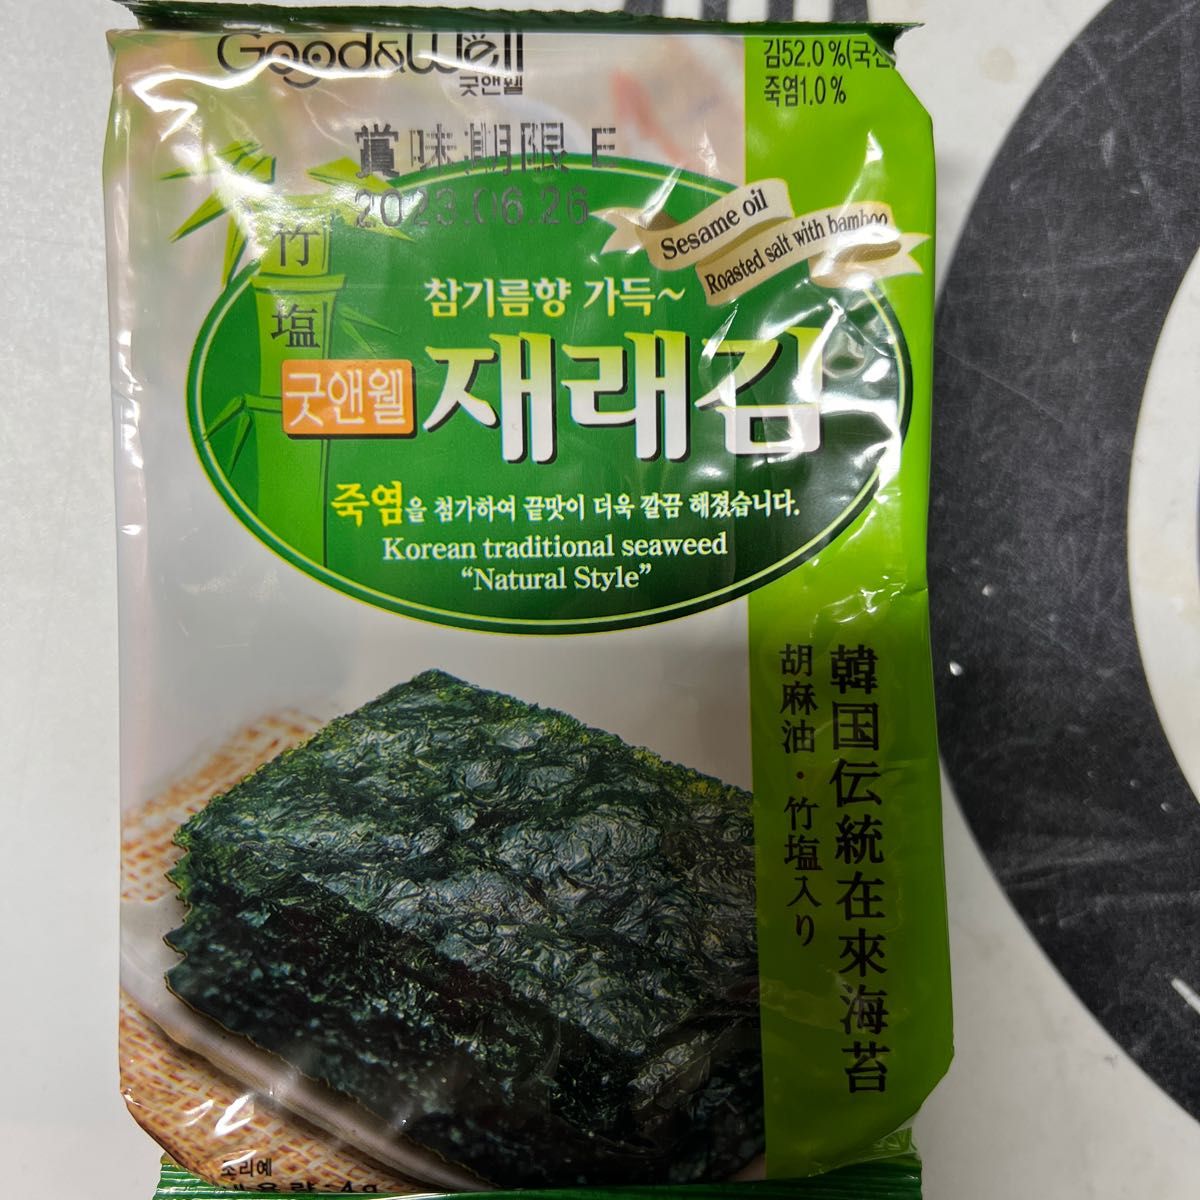 激安通販販売 韓国海苔 韓国のり 公式 CJ bibigo ビビゴ 韓国味付のり小分け8パック メーカー直送 韓国 韓国食品 韓国食材 常温 国内製造  日本製造